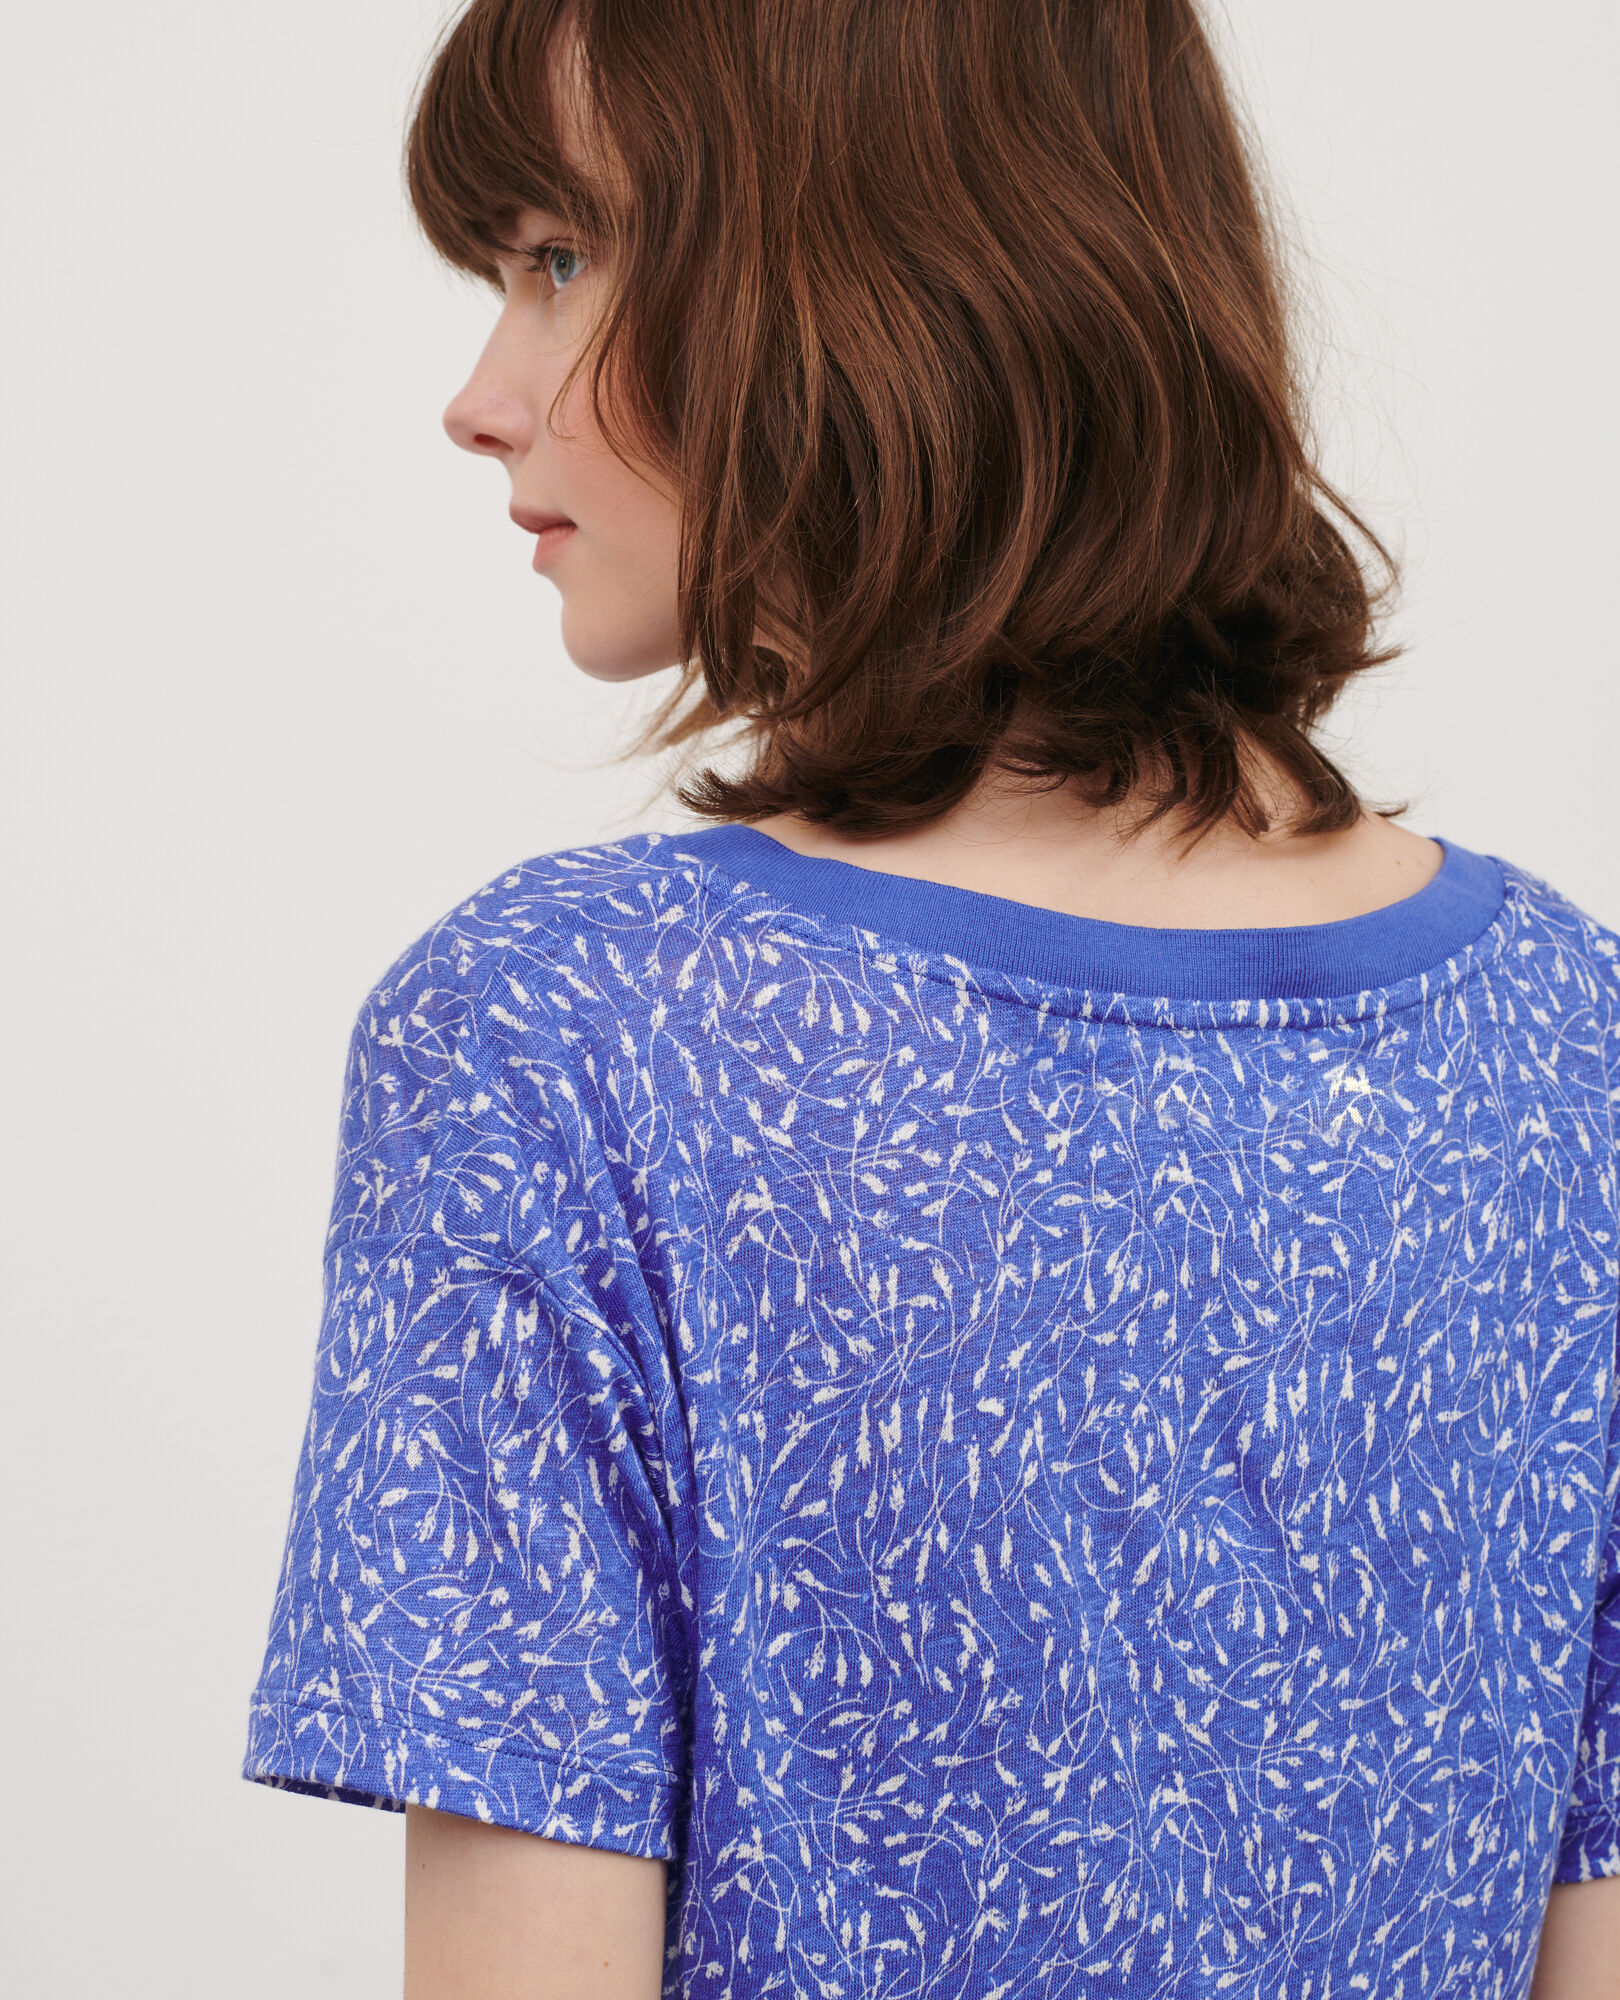 SARAH - T-Shirt mit V-Ausschnitt aus Leinen 91 print blue 2ste338f05